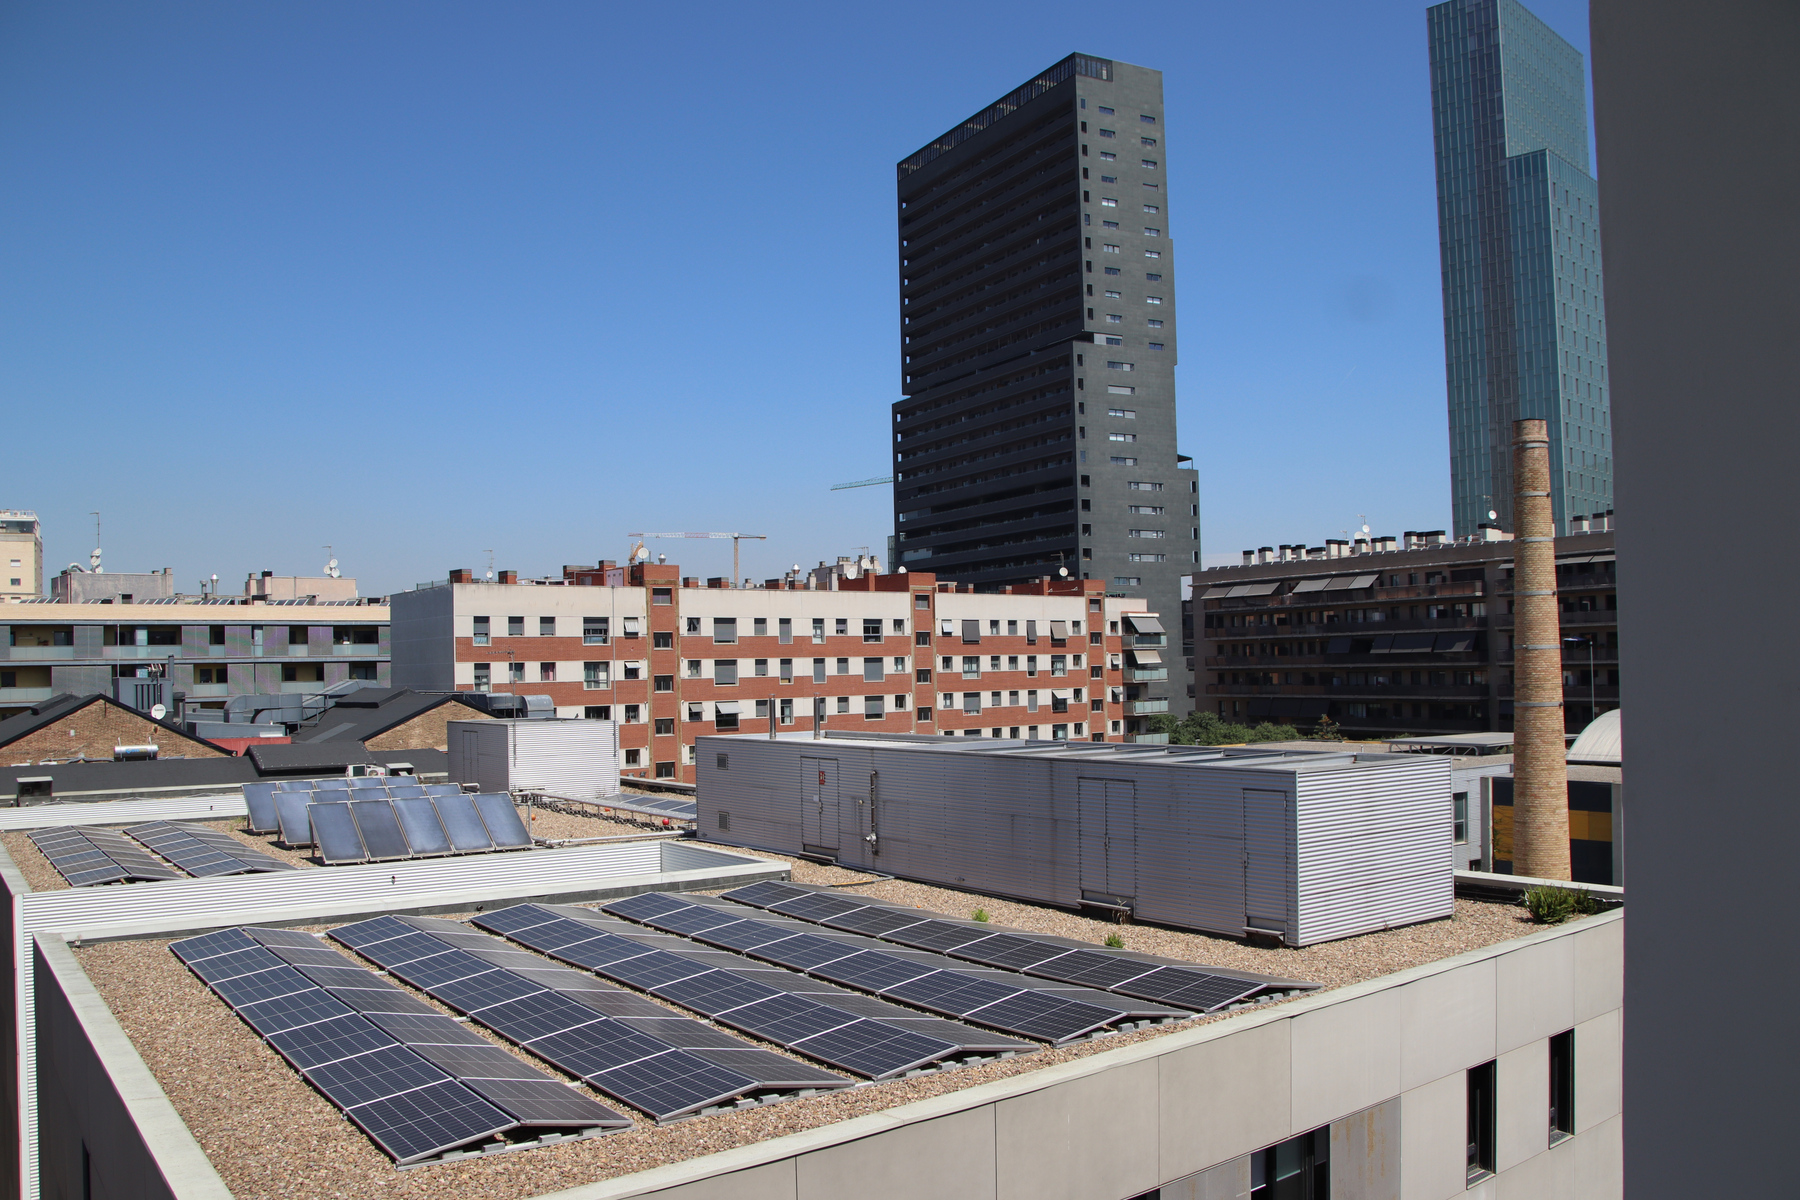  Plaques fotovoltaiques instal·lades a la coberta de l'Institut Quatre Cantons, al Poblenou. — Blanca Blay / ACN